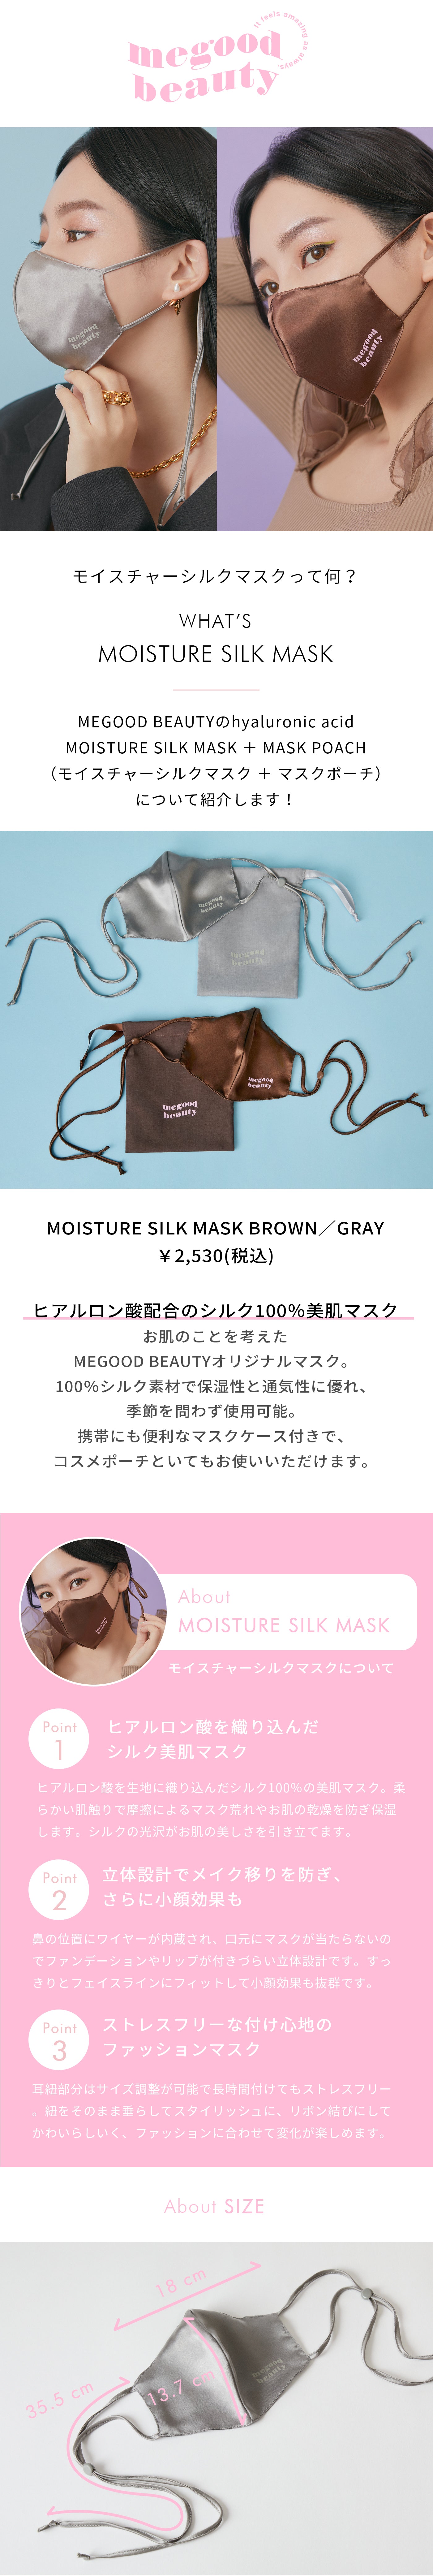 公式】mgb skin MOISTURE SILK MASK BROWN モイスチャーシルクマスク ブラウン